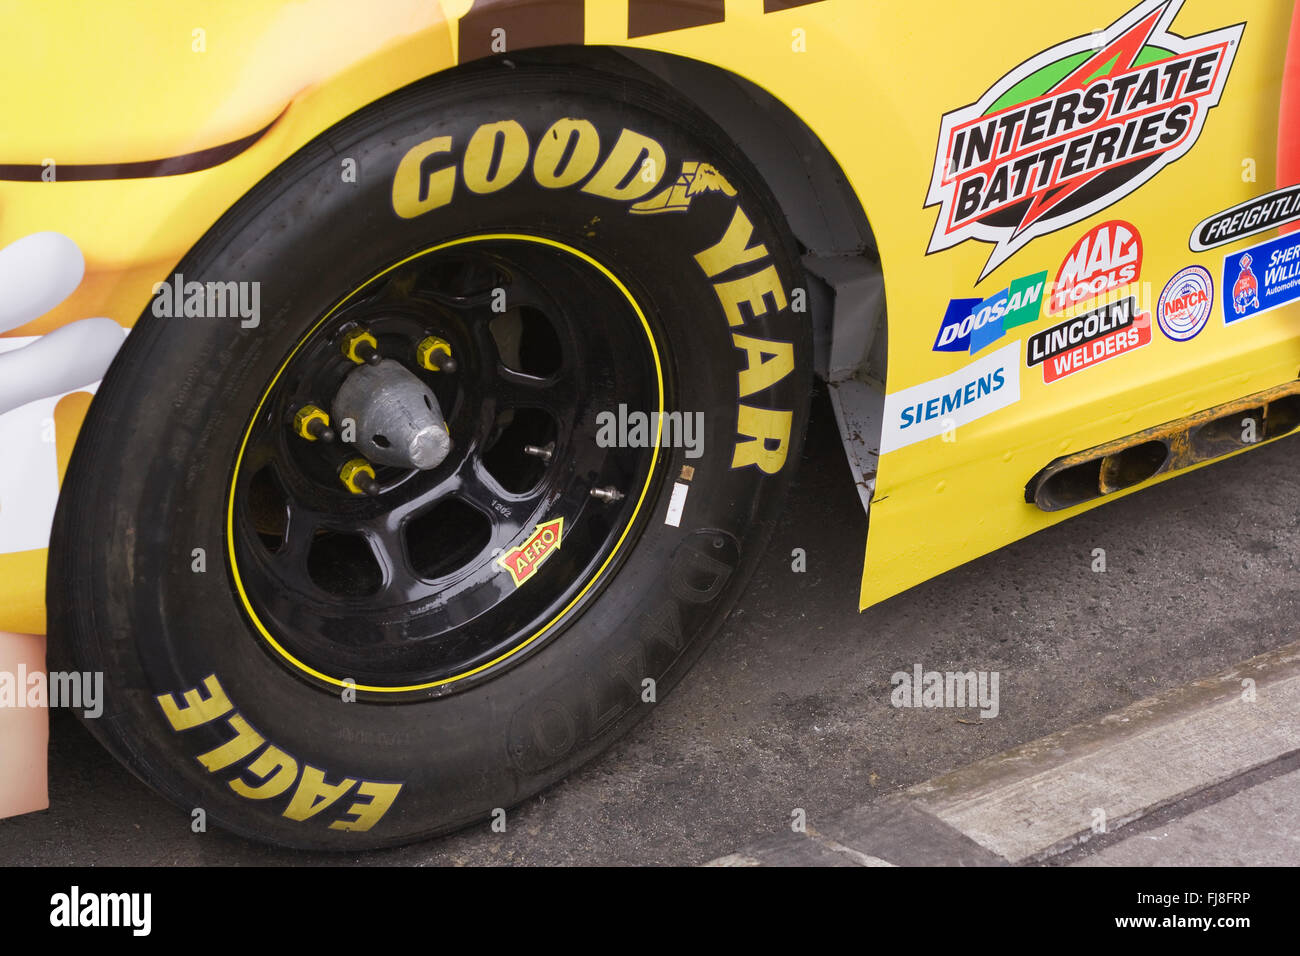 Rechts hinten Goodyear Eagle D4470 Rennradreifen von einem NASCAR-Rennwagen  auf der Straße geparkt Stockfotografie - Alamy